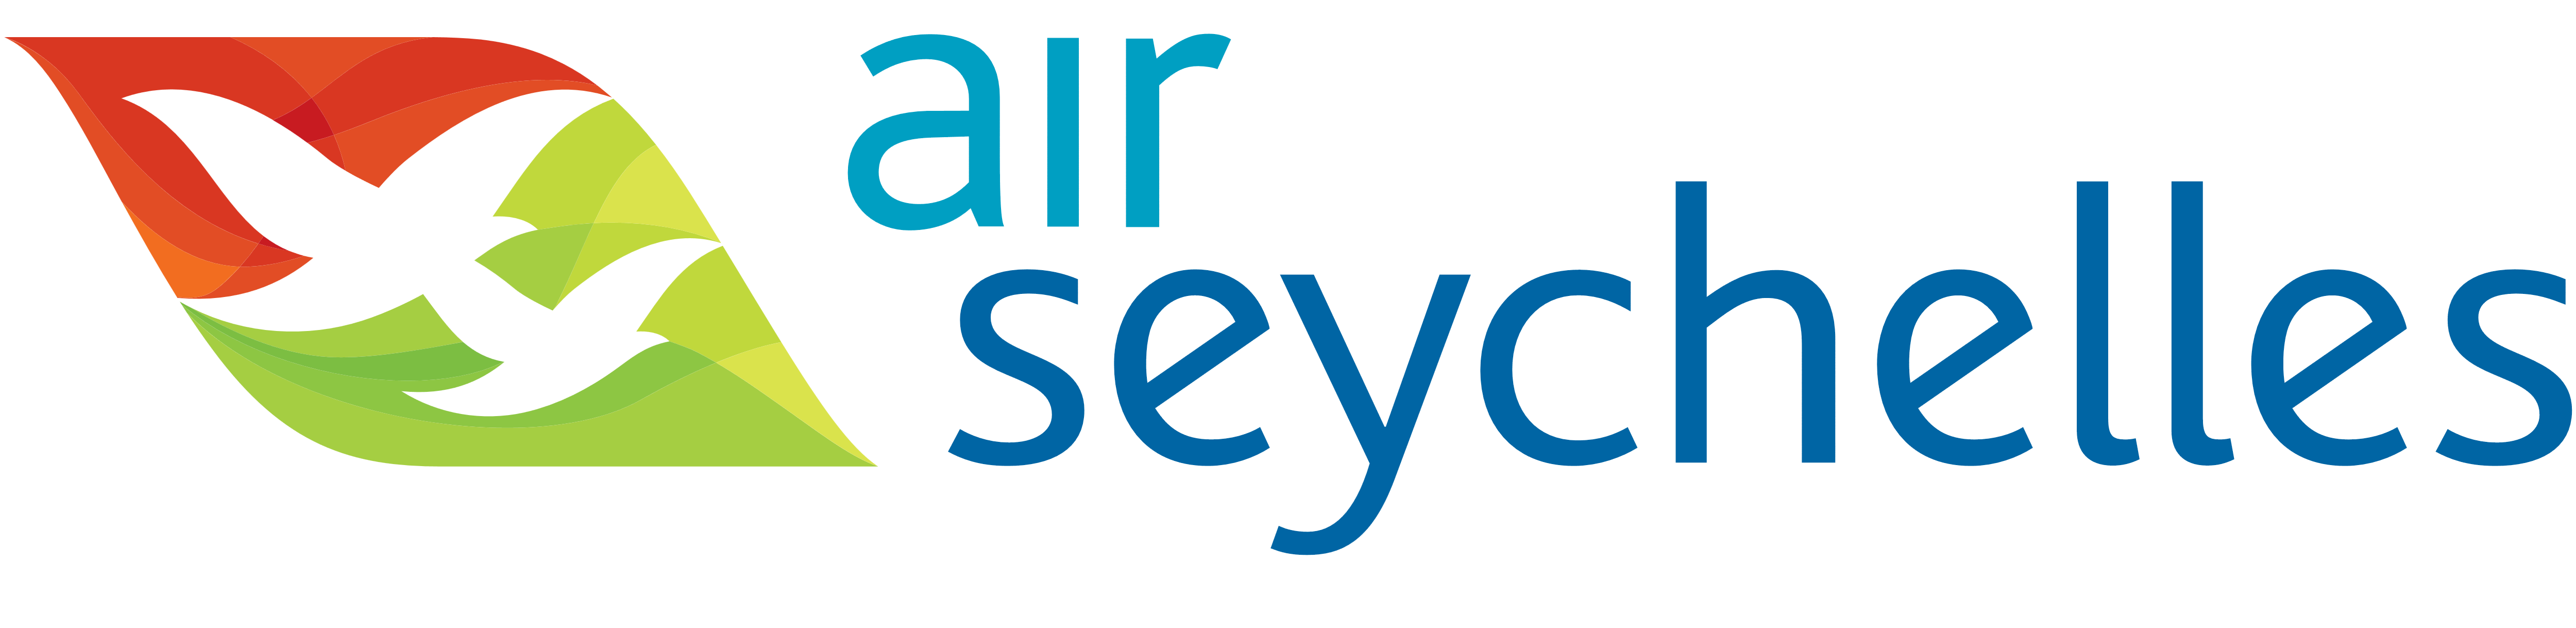 Resultado de imagen para Air Seychelles logo png